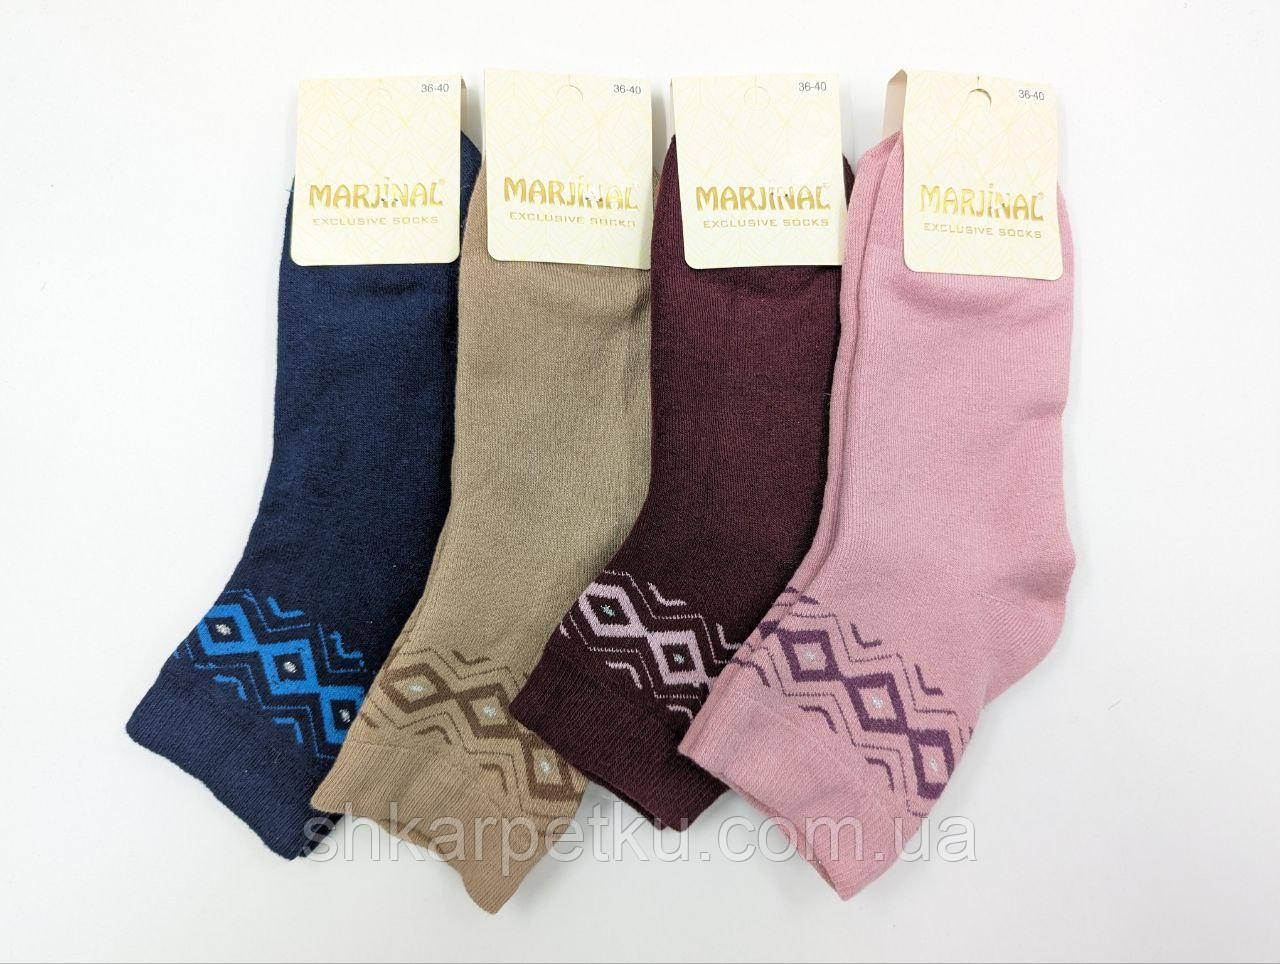 Шкарпетки жіночі махрові Marjinal теплі однотонні Ромб 36-40 12 пар/уп мікс кольрів